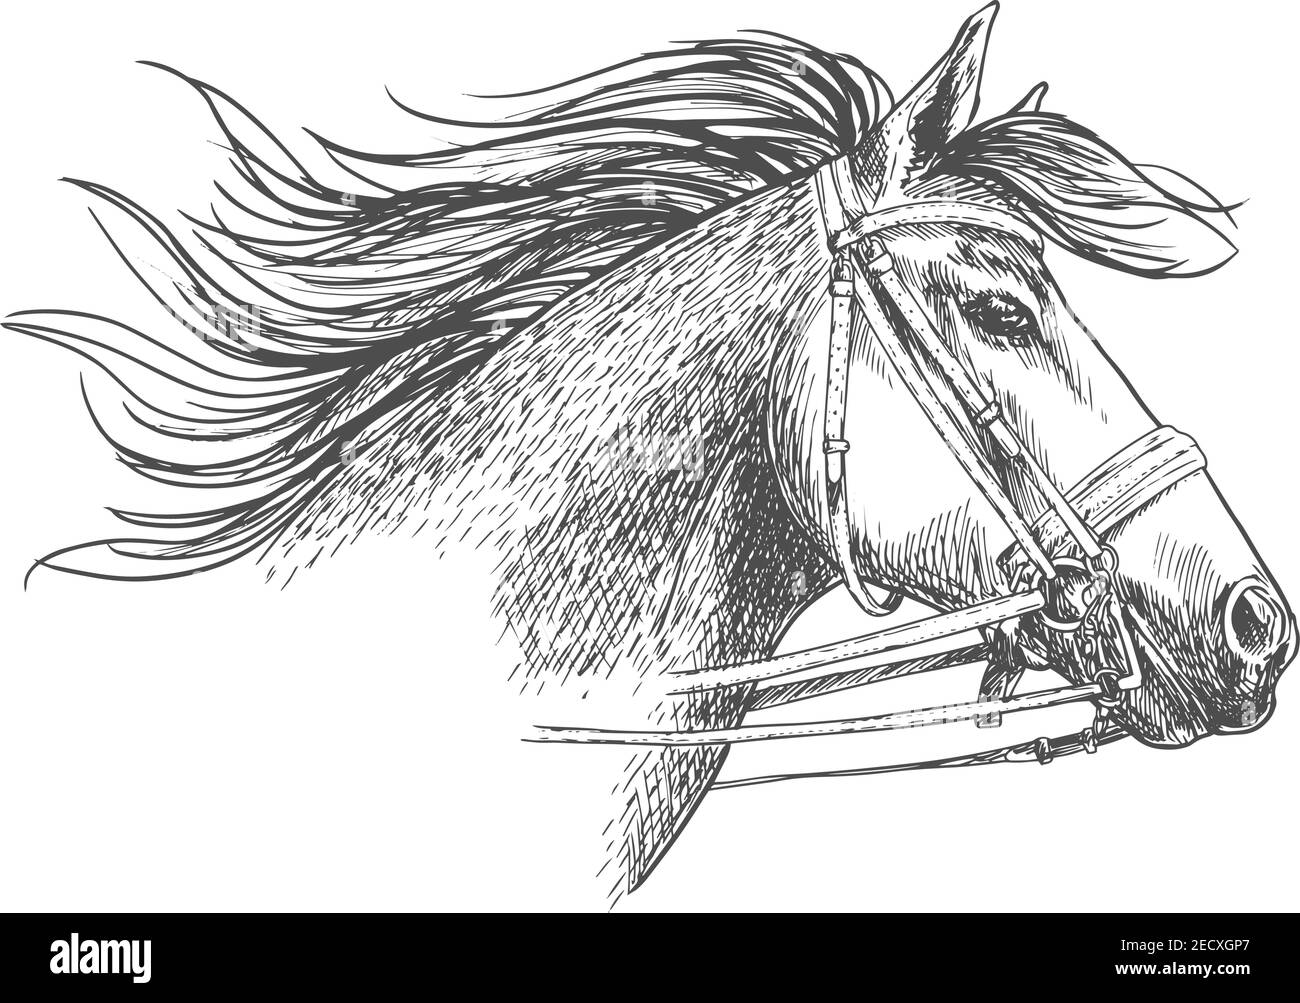 Testa di cavallo in una briglia con la punta e le redini schizzo. Corsa ippica araba con manie fluenti per ippica simbolo, gara sportiva equestre Illustrazione Vettoriale